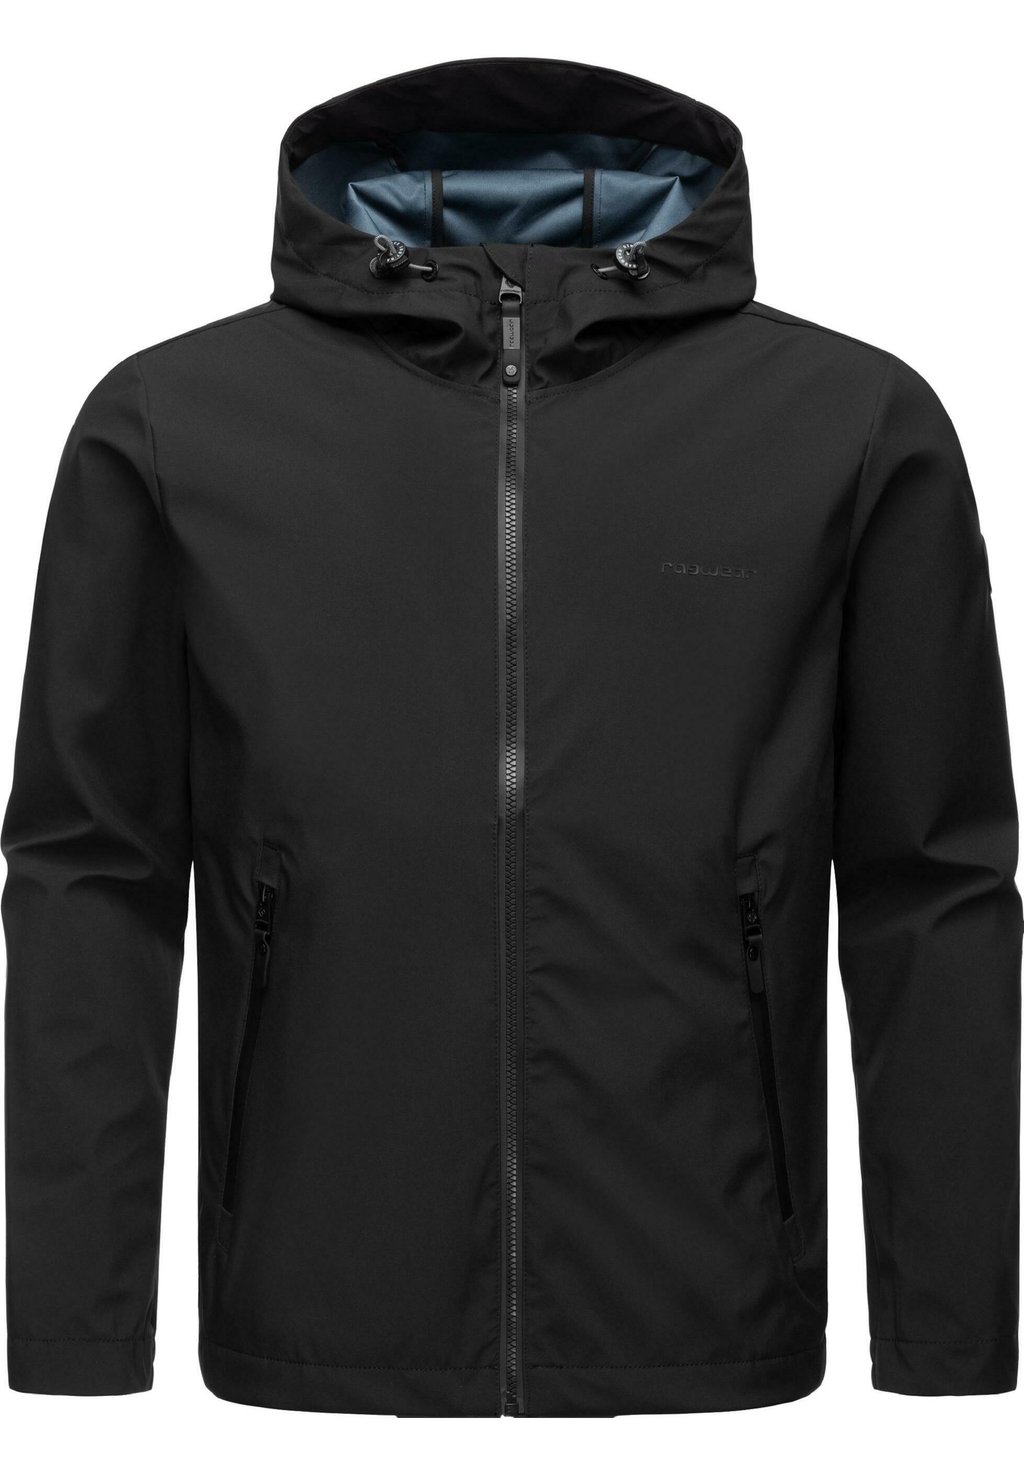 Куртка для активного отдыха SHELLWIE Ragwear, цвет black куртка для активного отдыха shellwie ragwear цвет black